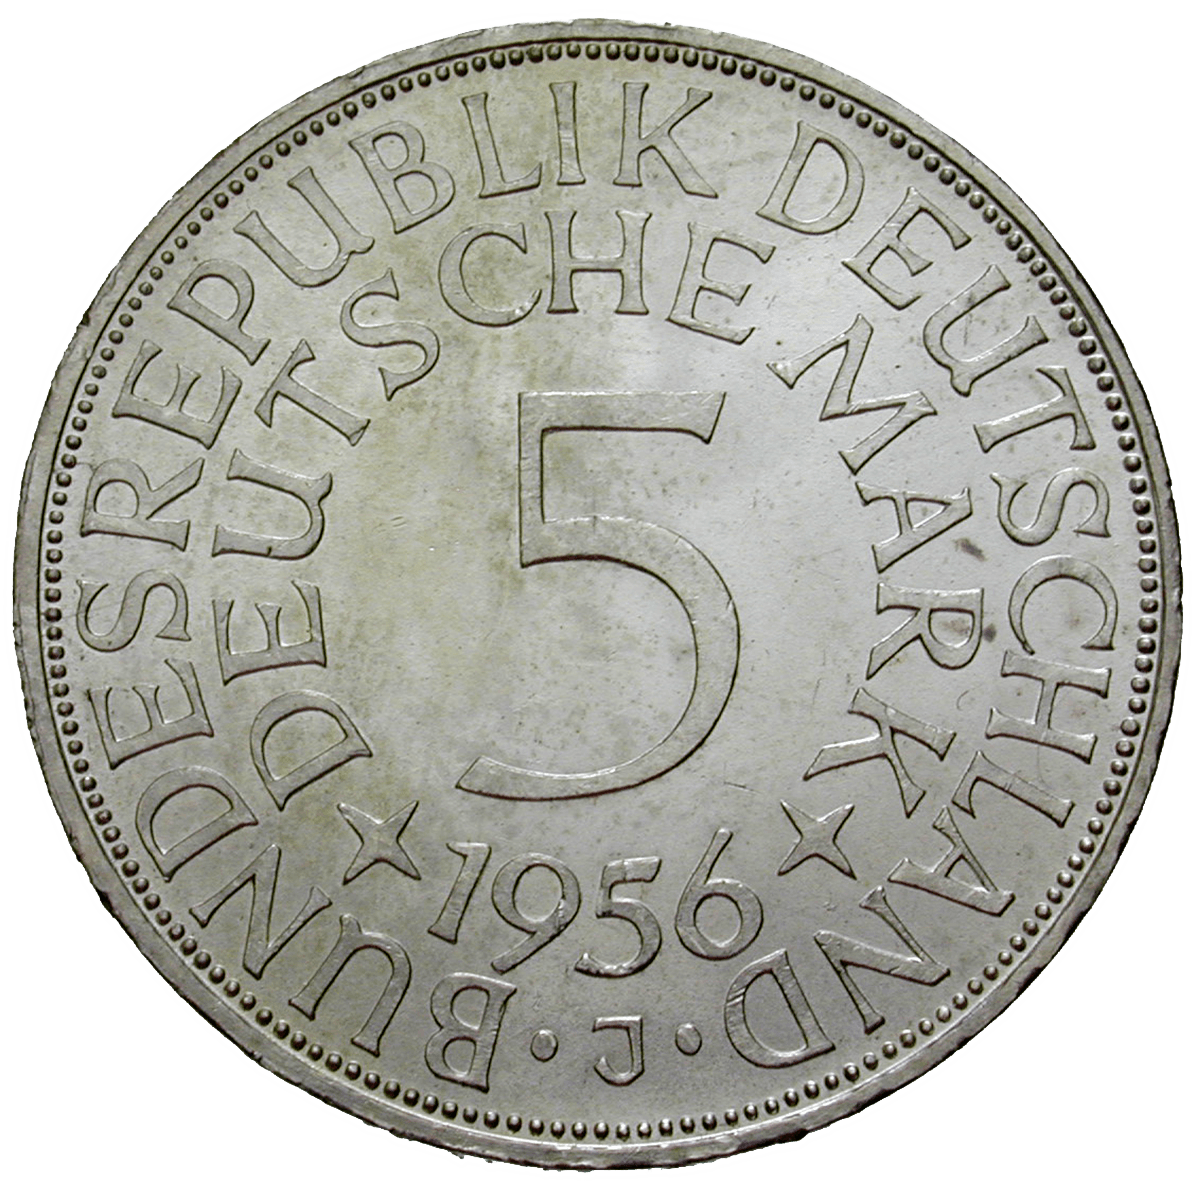 Bundesrepublik Deutschland, 5 Deutsche Mark 1956 (obverse)